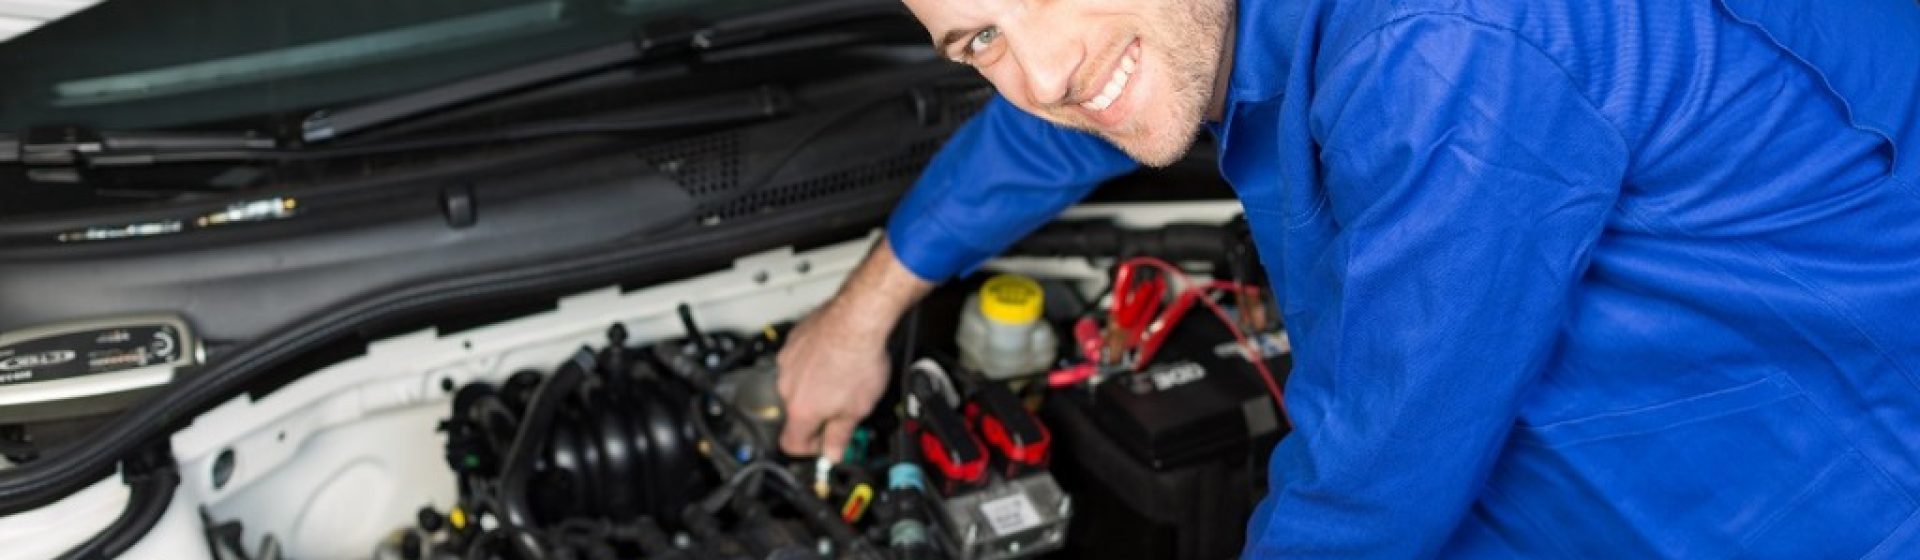 Service de mécanicien automobile à Cergy – Garage Premiere Main